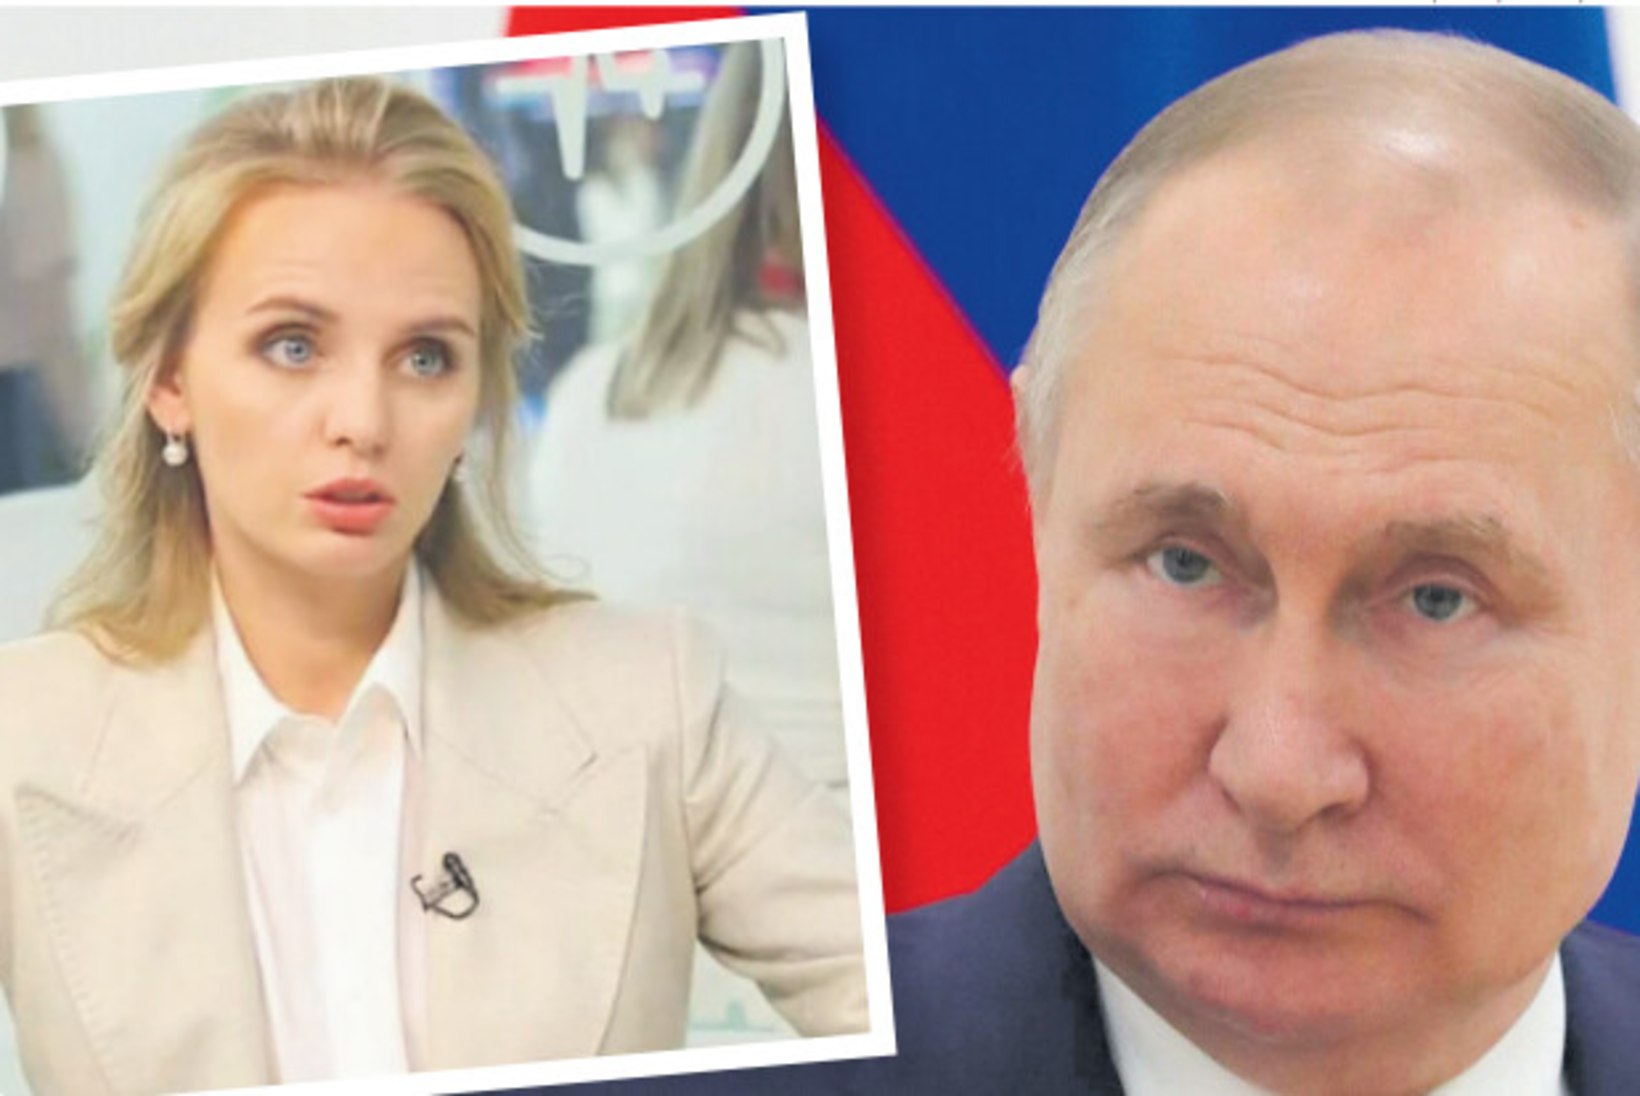 REETMISE HIRMUS: Putin ei luba tütrel välismaale reisida